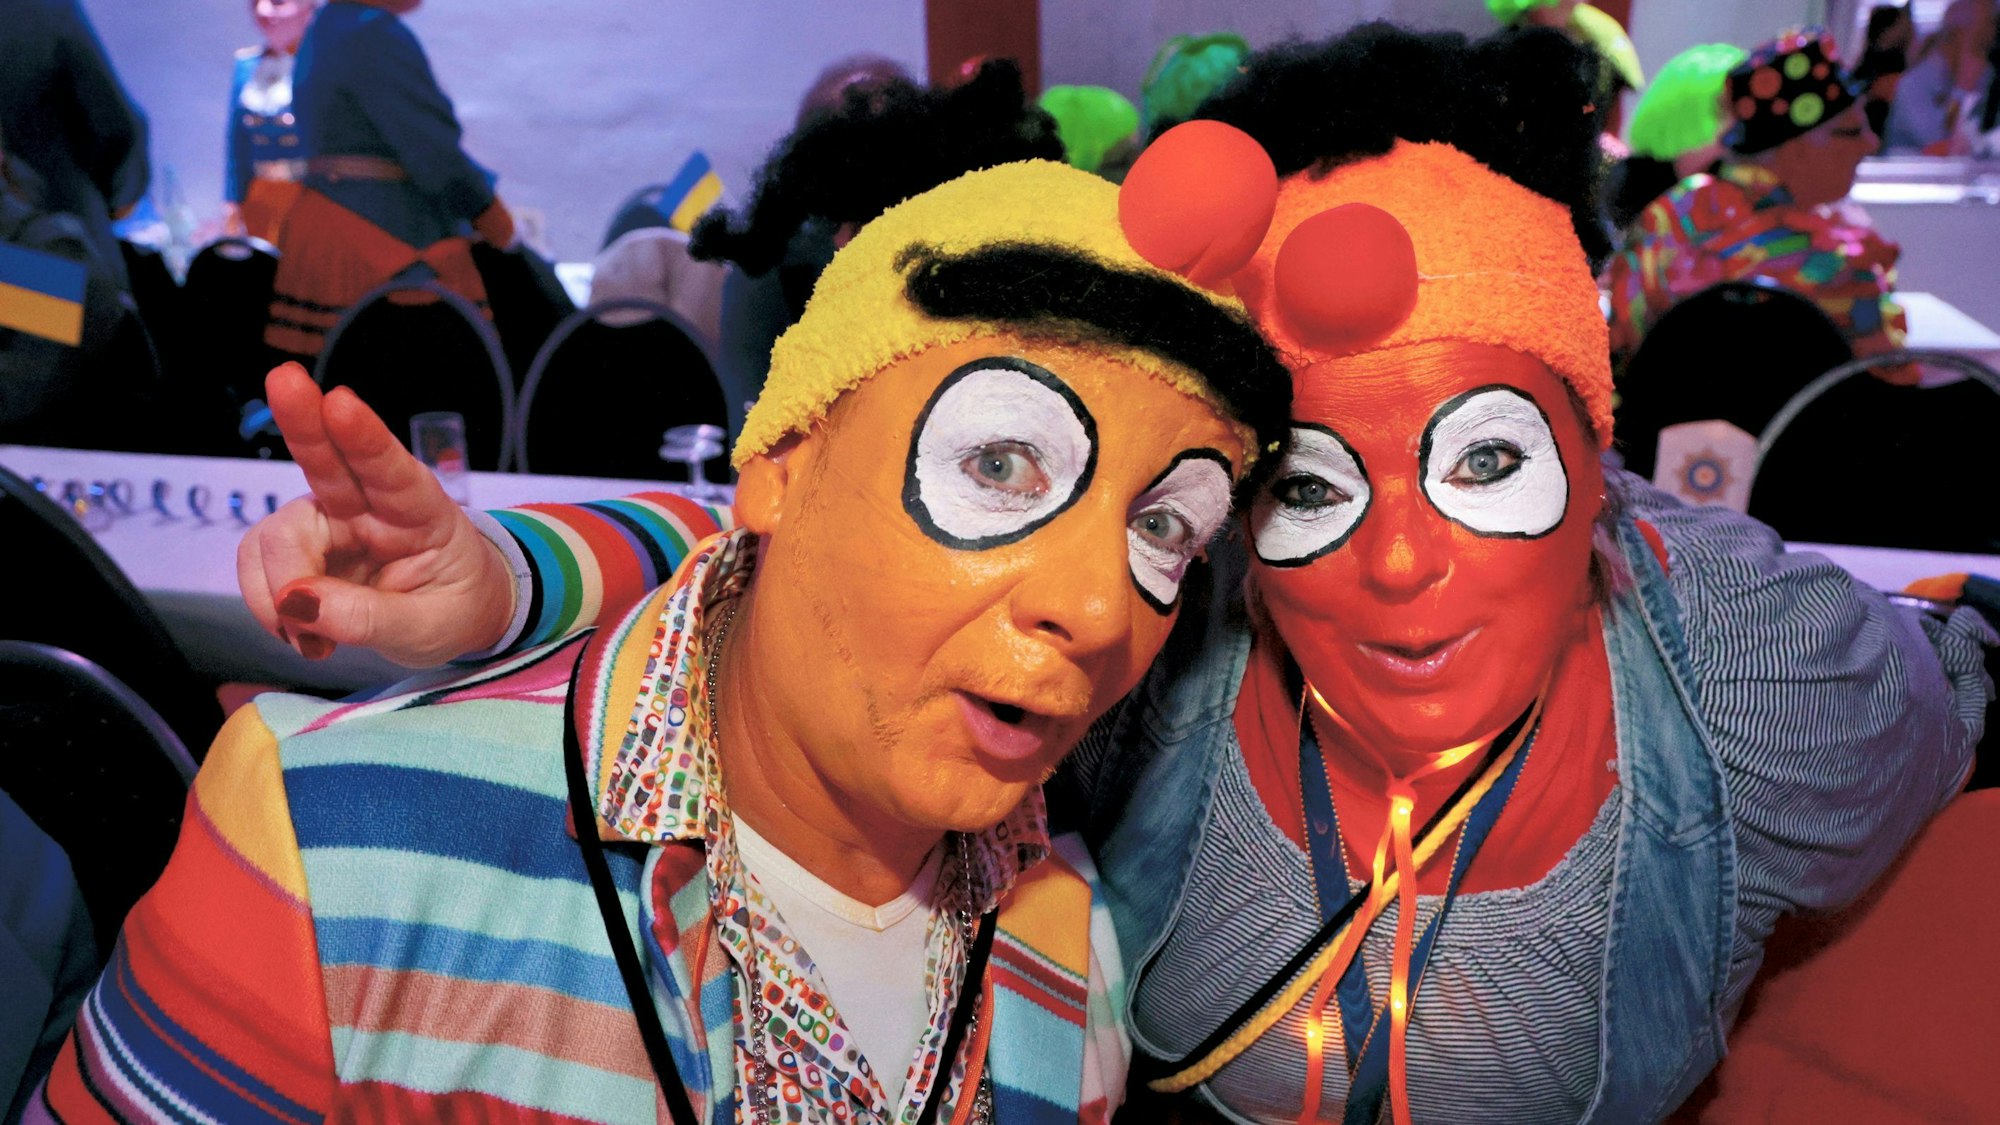 Michael und Sabine Beier in ihren Kostümen als Ernie & Bert.